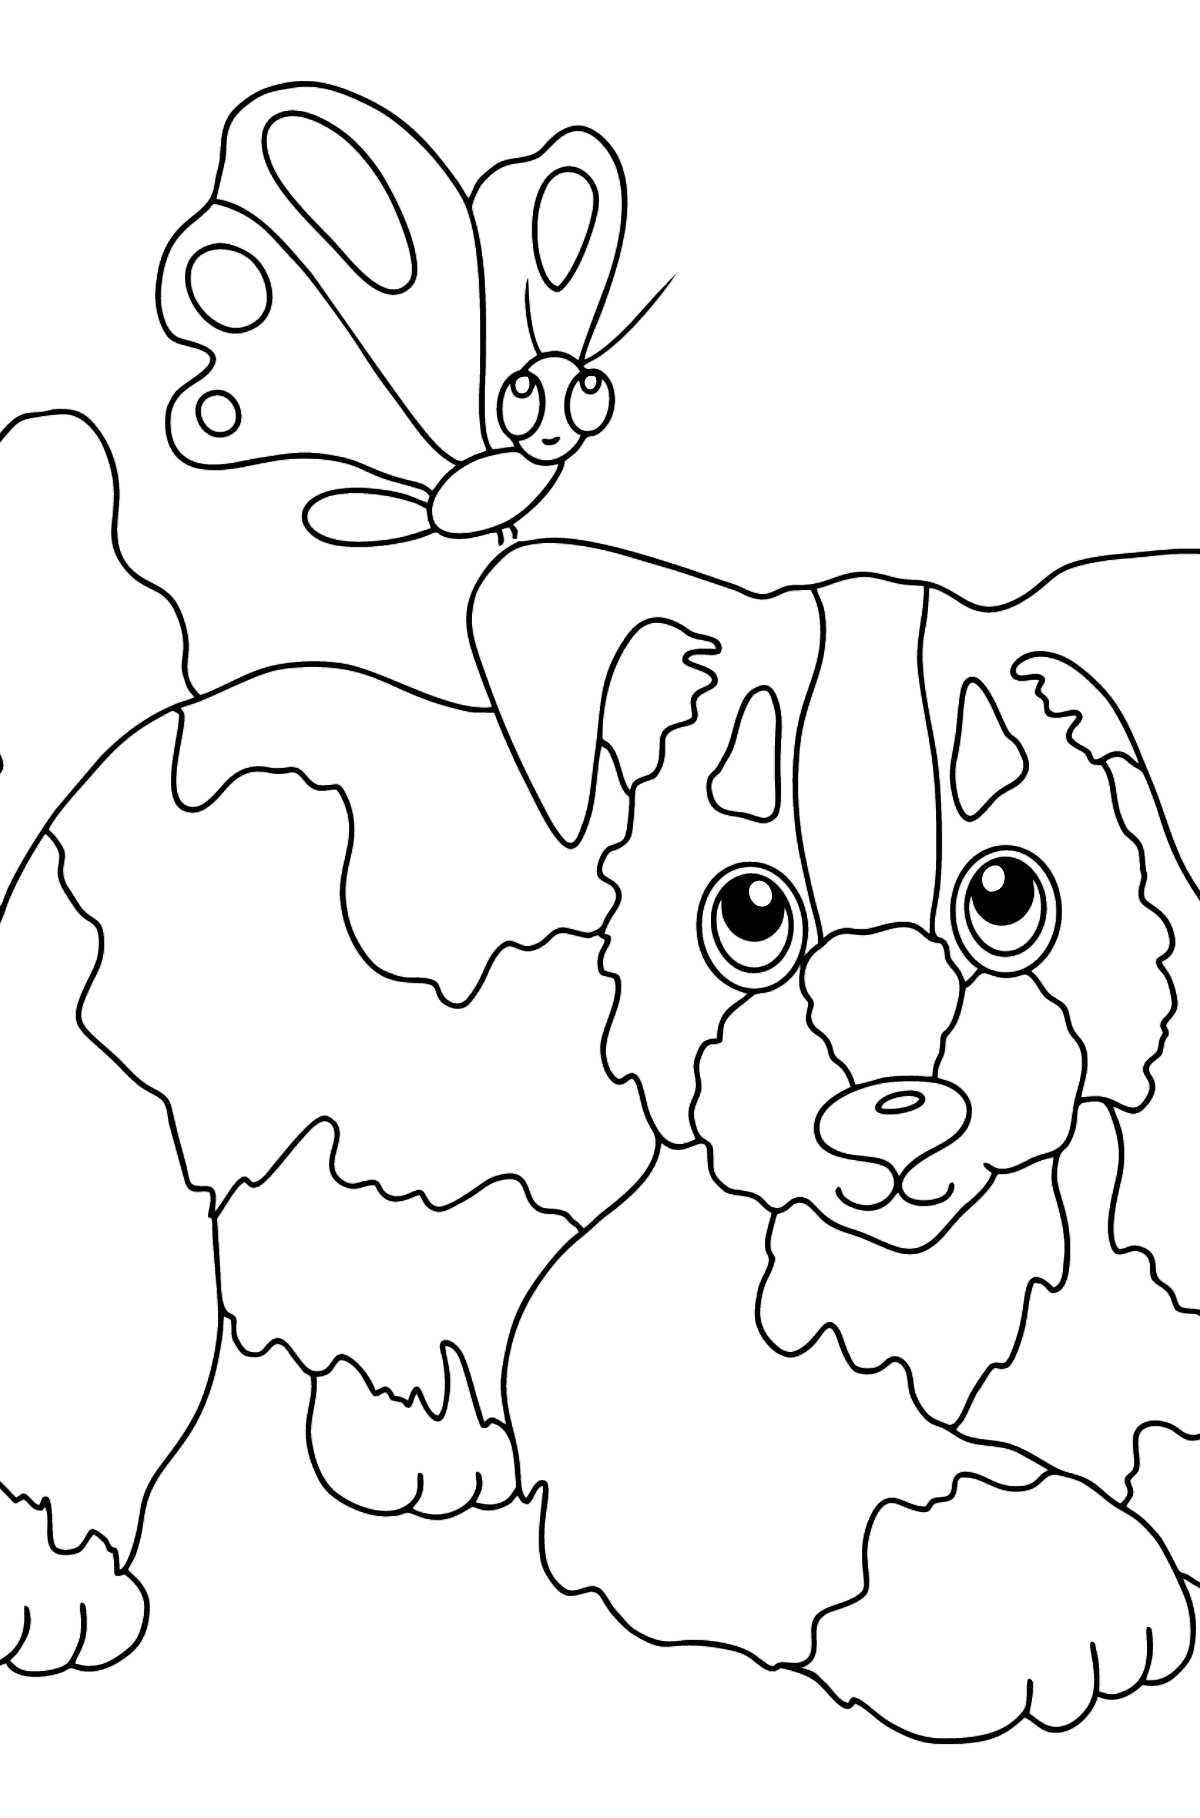 Boyama sayfası köpek ve kelebek (kolay) - Boyamalar çocuklar için